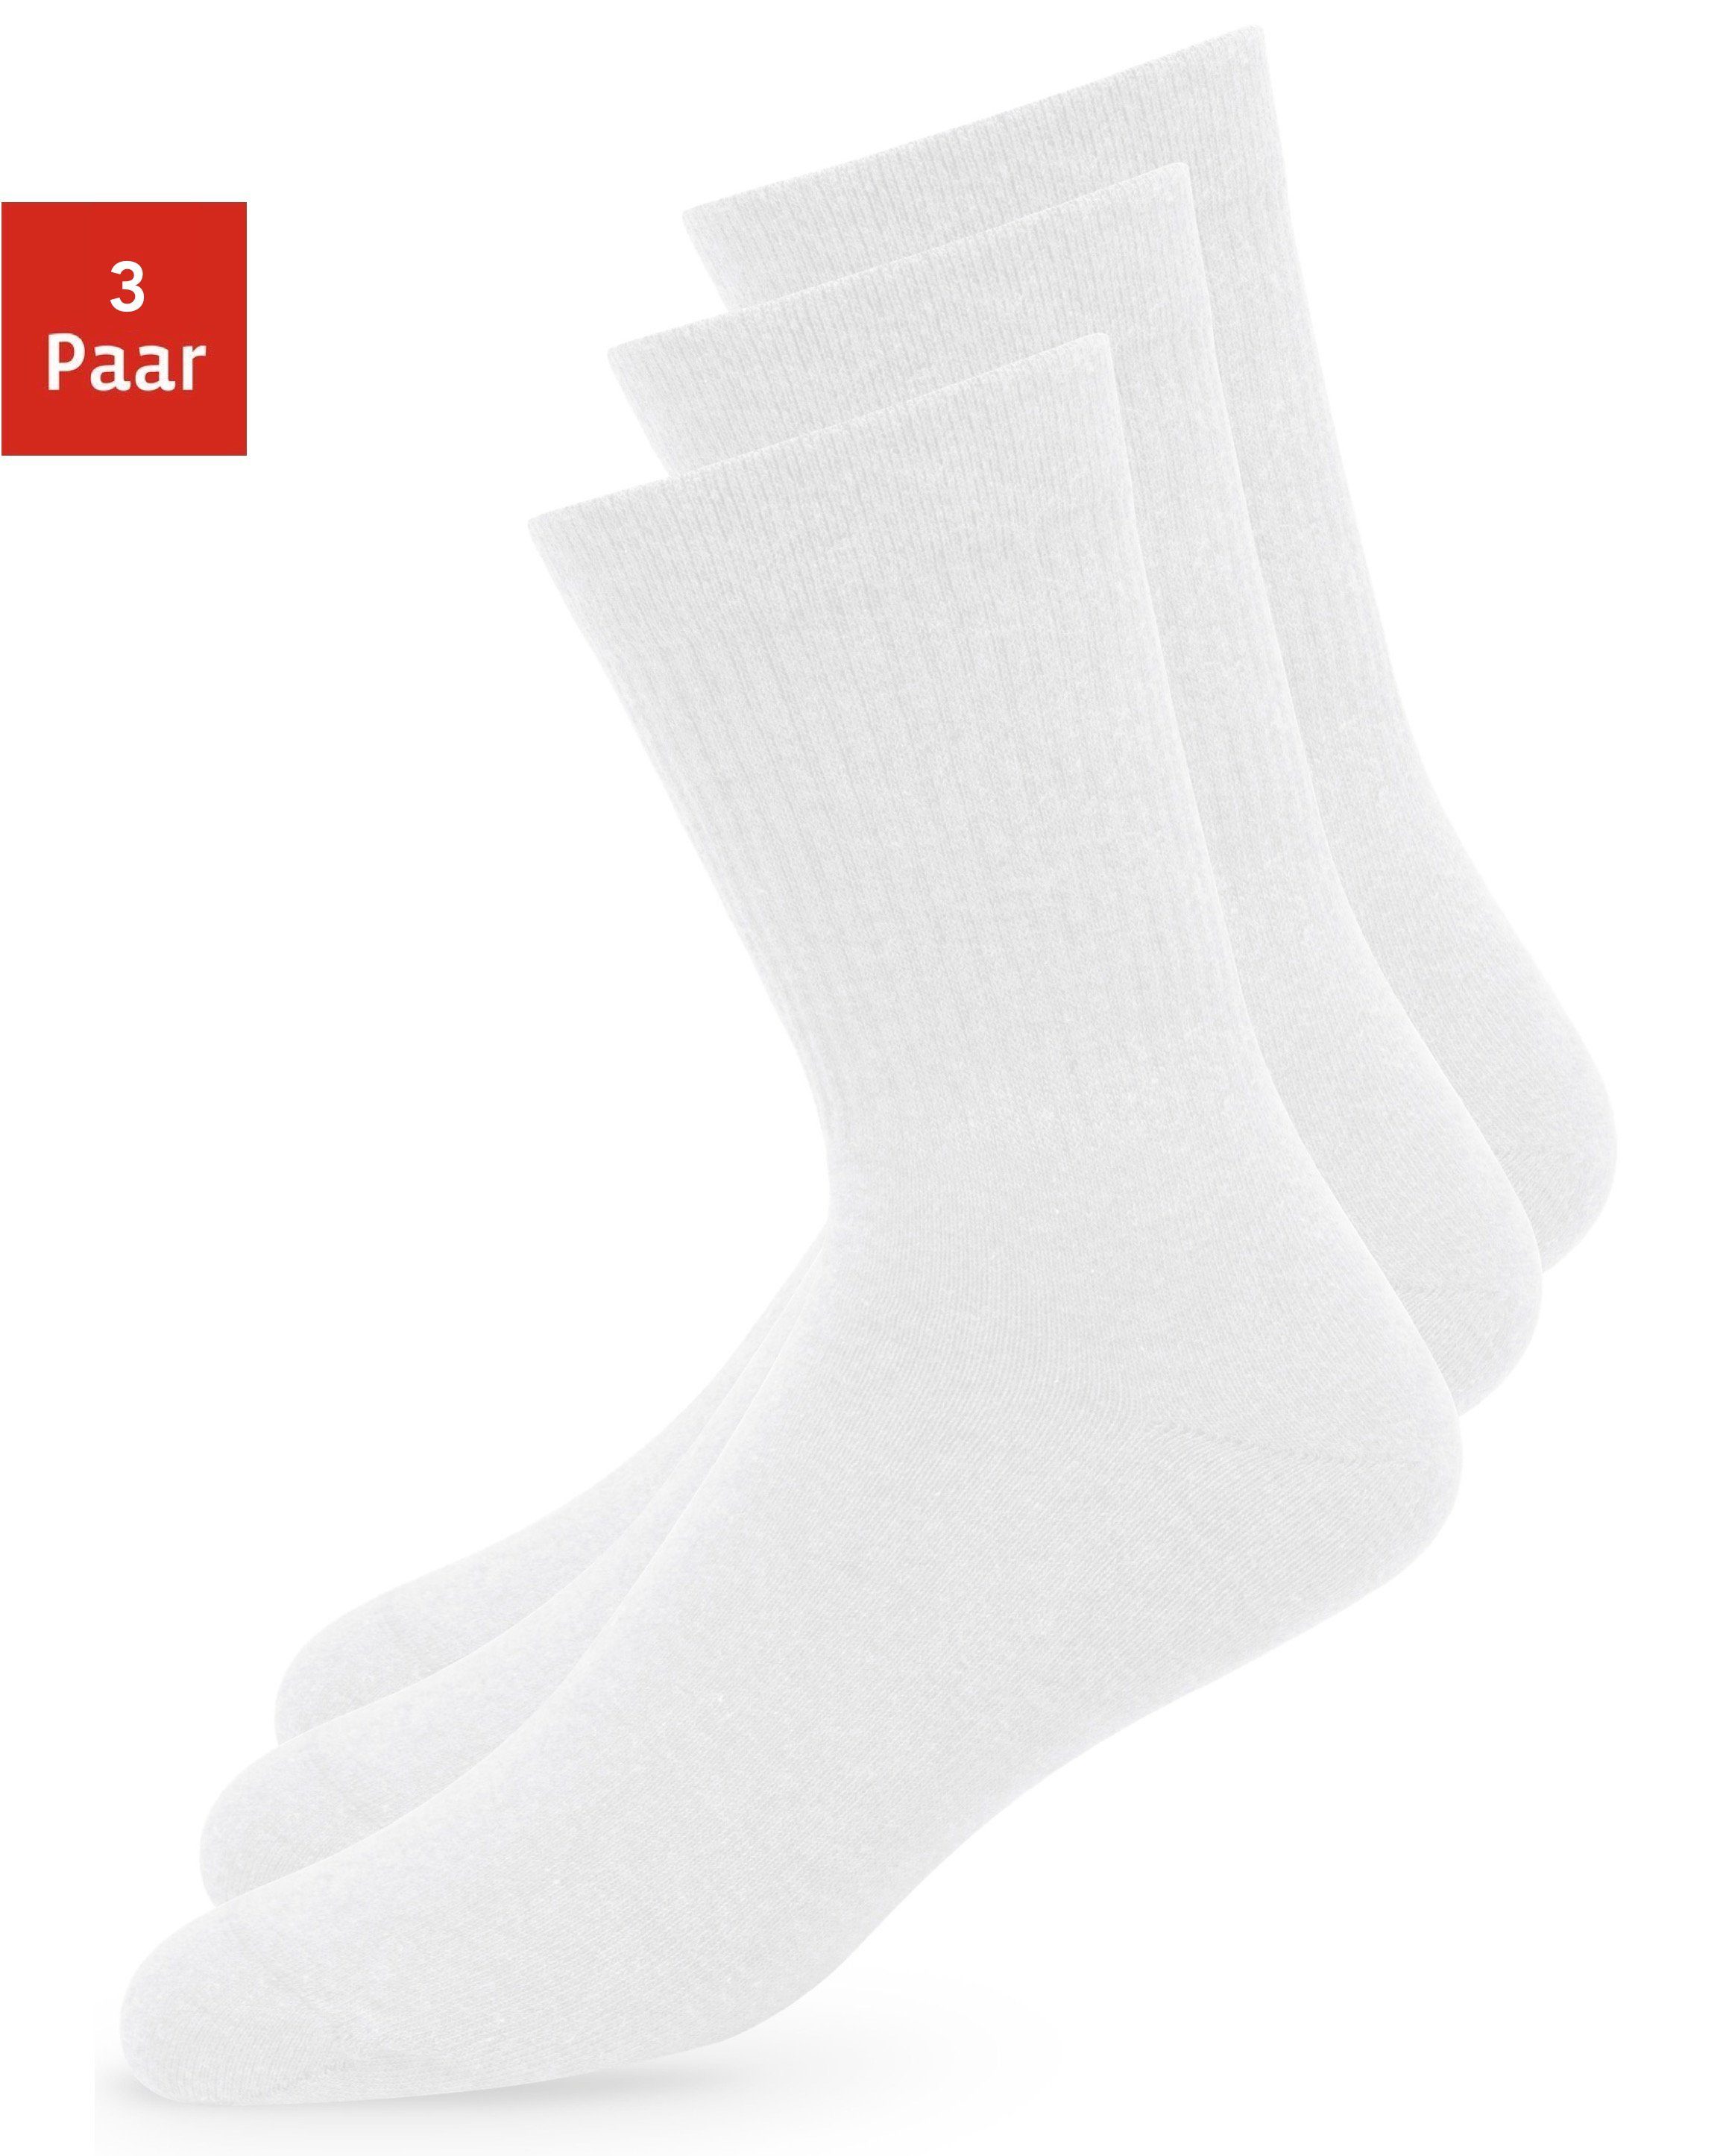 Basketball Socken online kaufen | OTTO